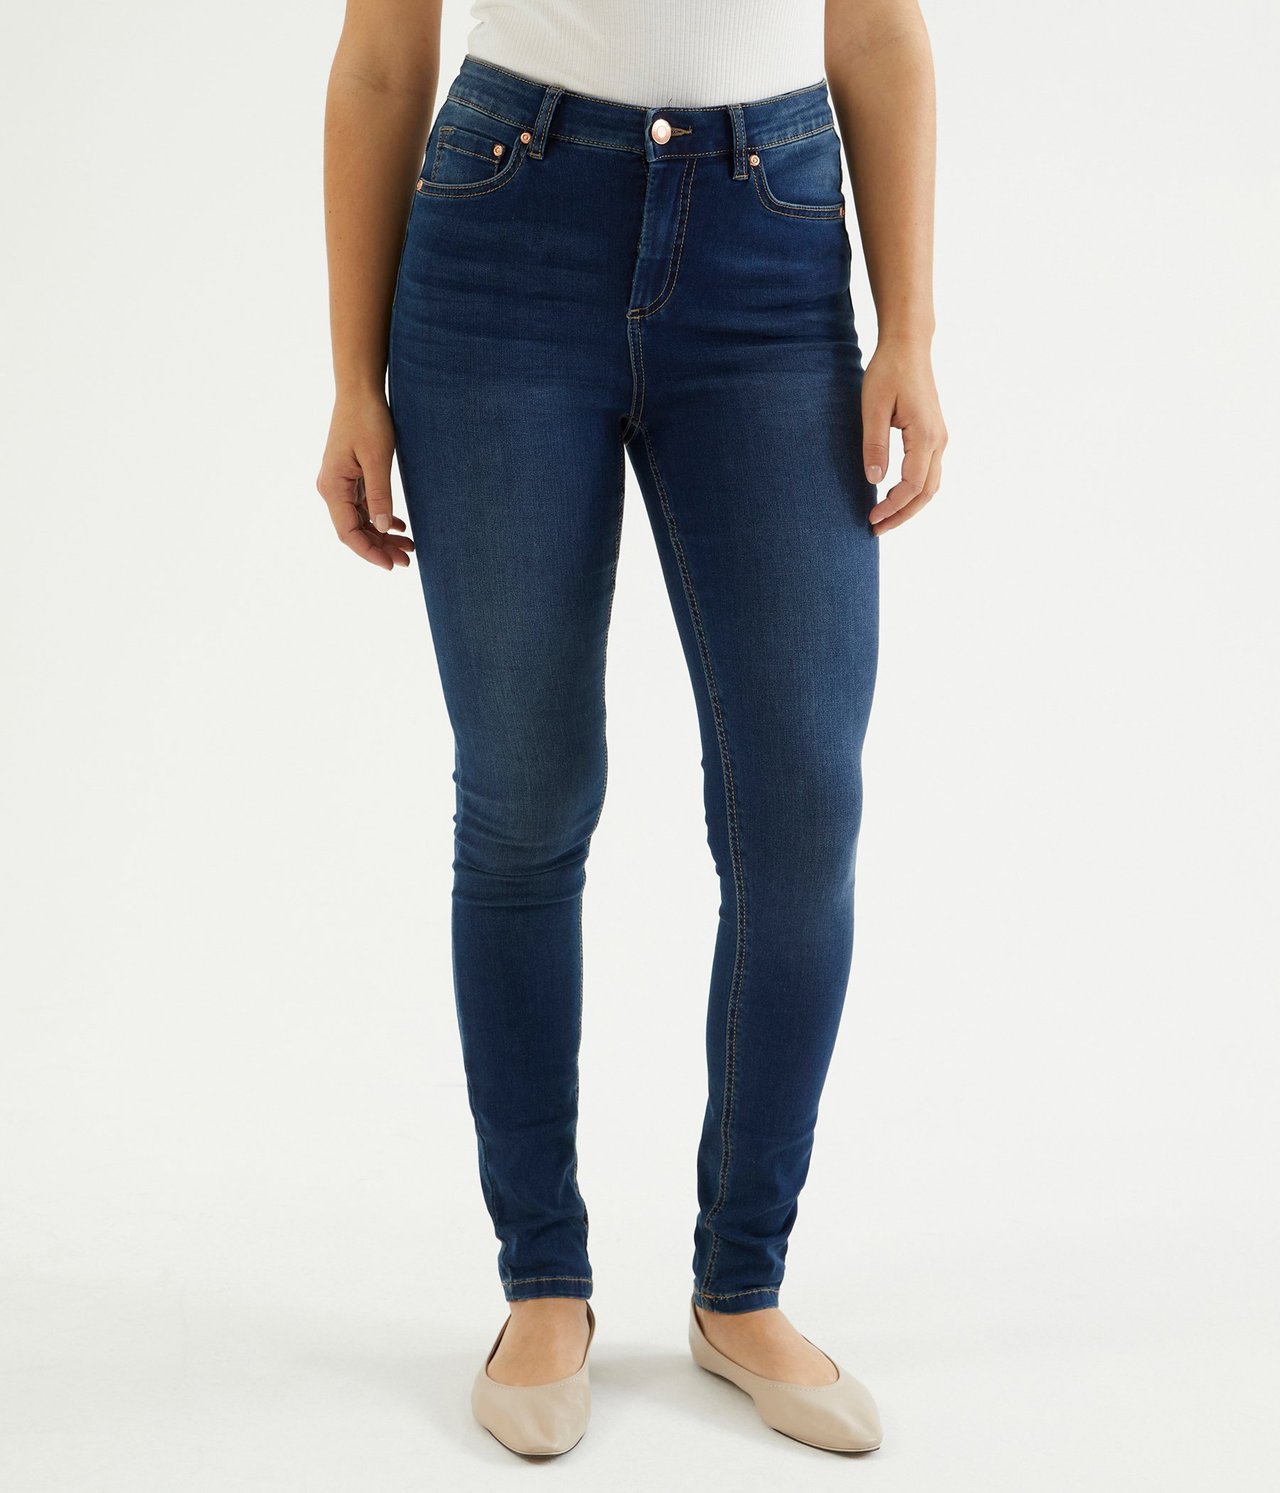 Super Slim Jeans High Waist - Mörk denim - 174cm / Storlek: 38 - 6